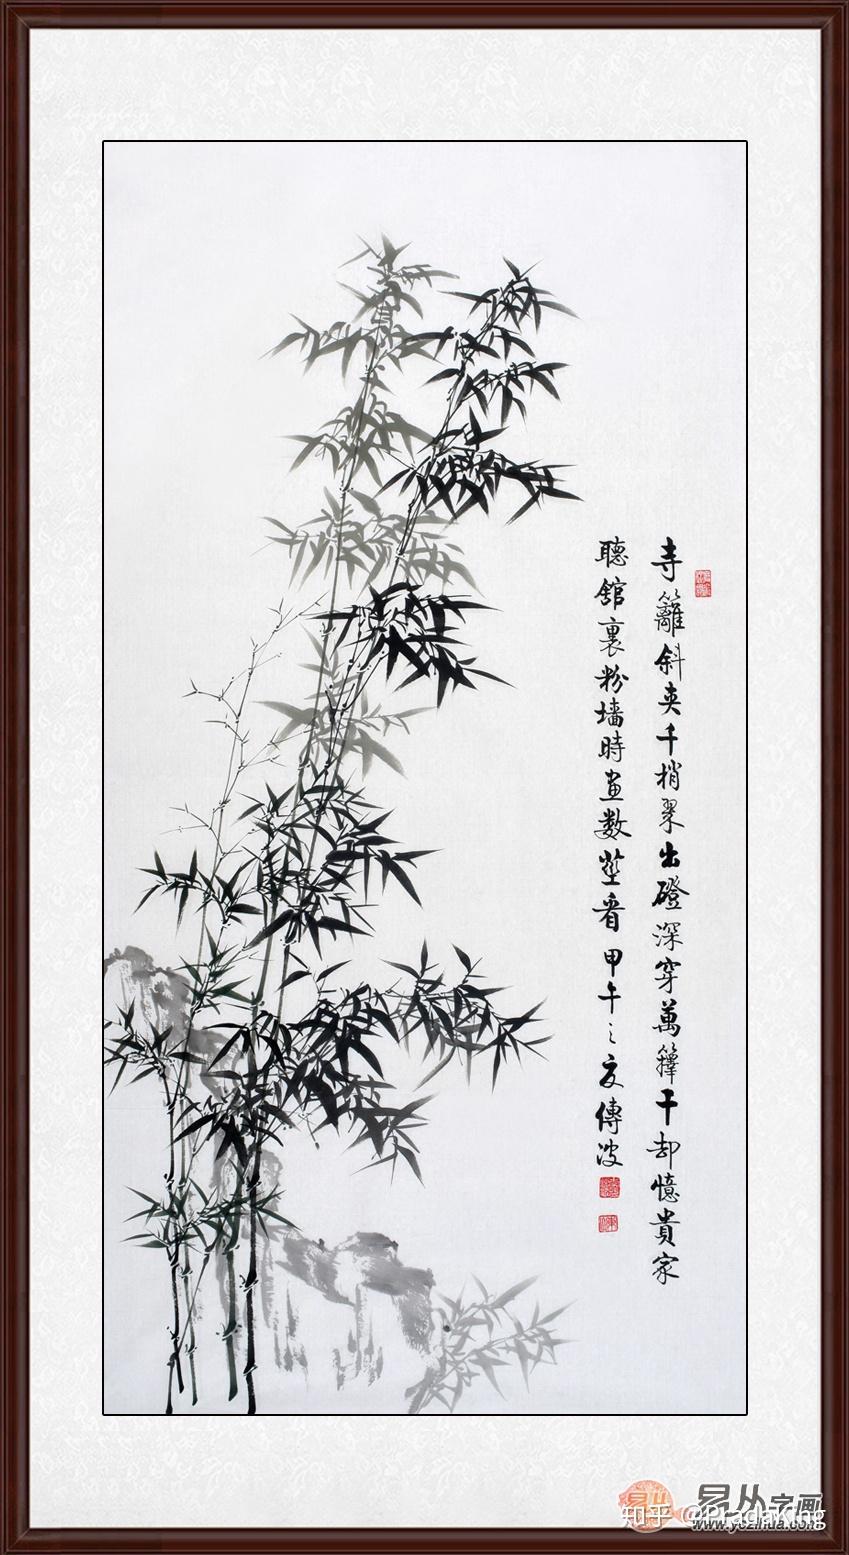 画《林逋·竹林》,构图疏朗开阔,墨色简洁不俗,在竹子的根部用淡赭色